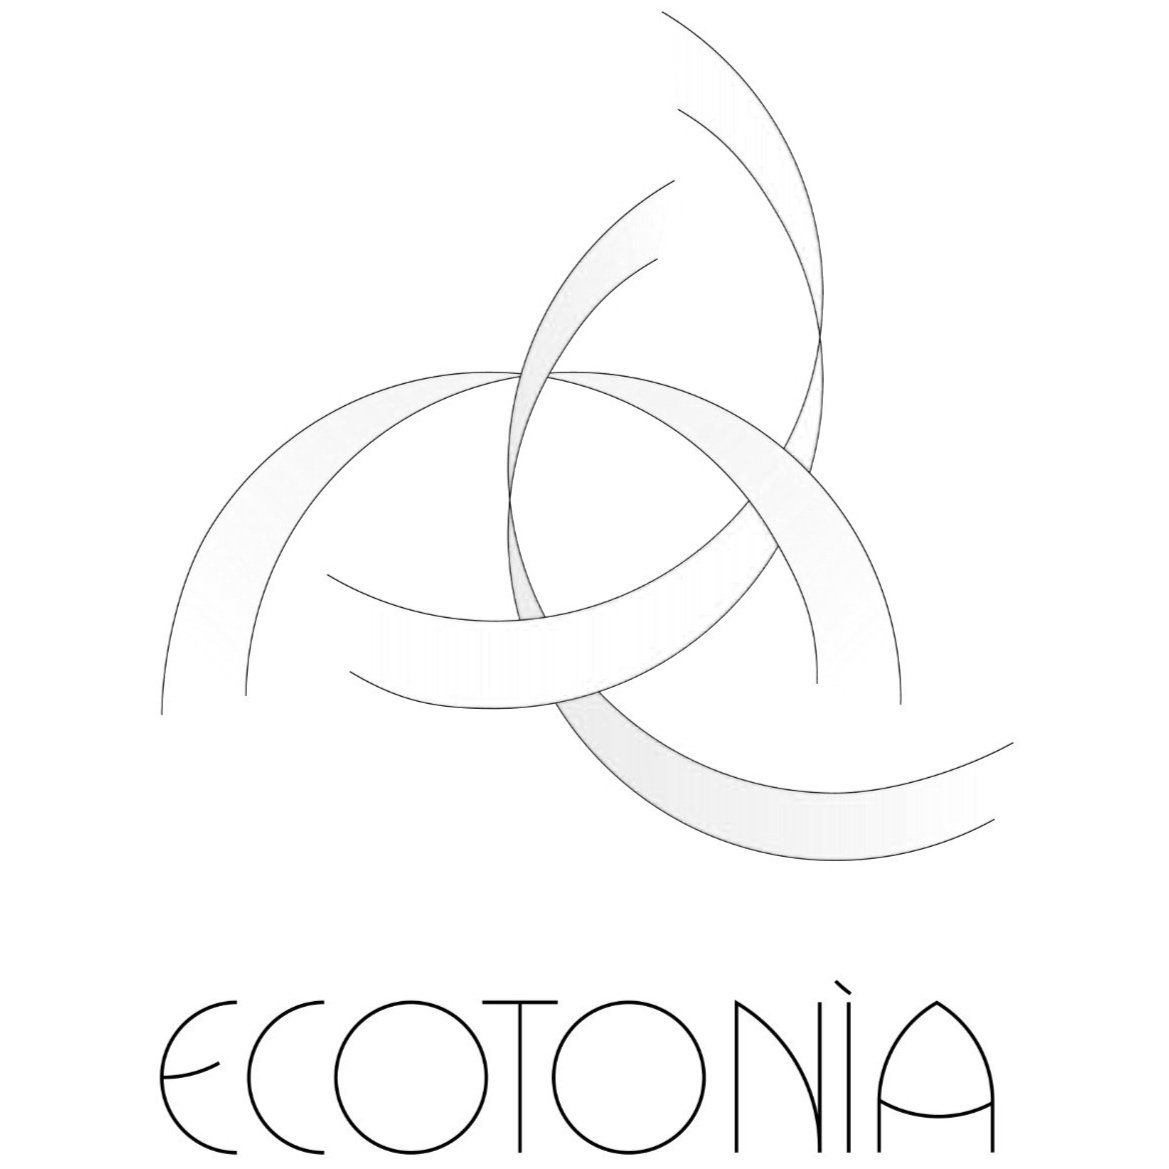 Ecotonìa